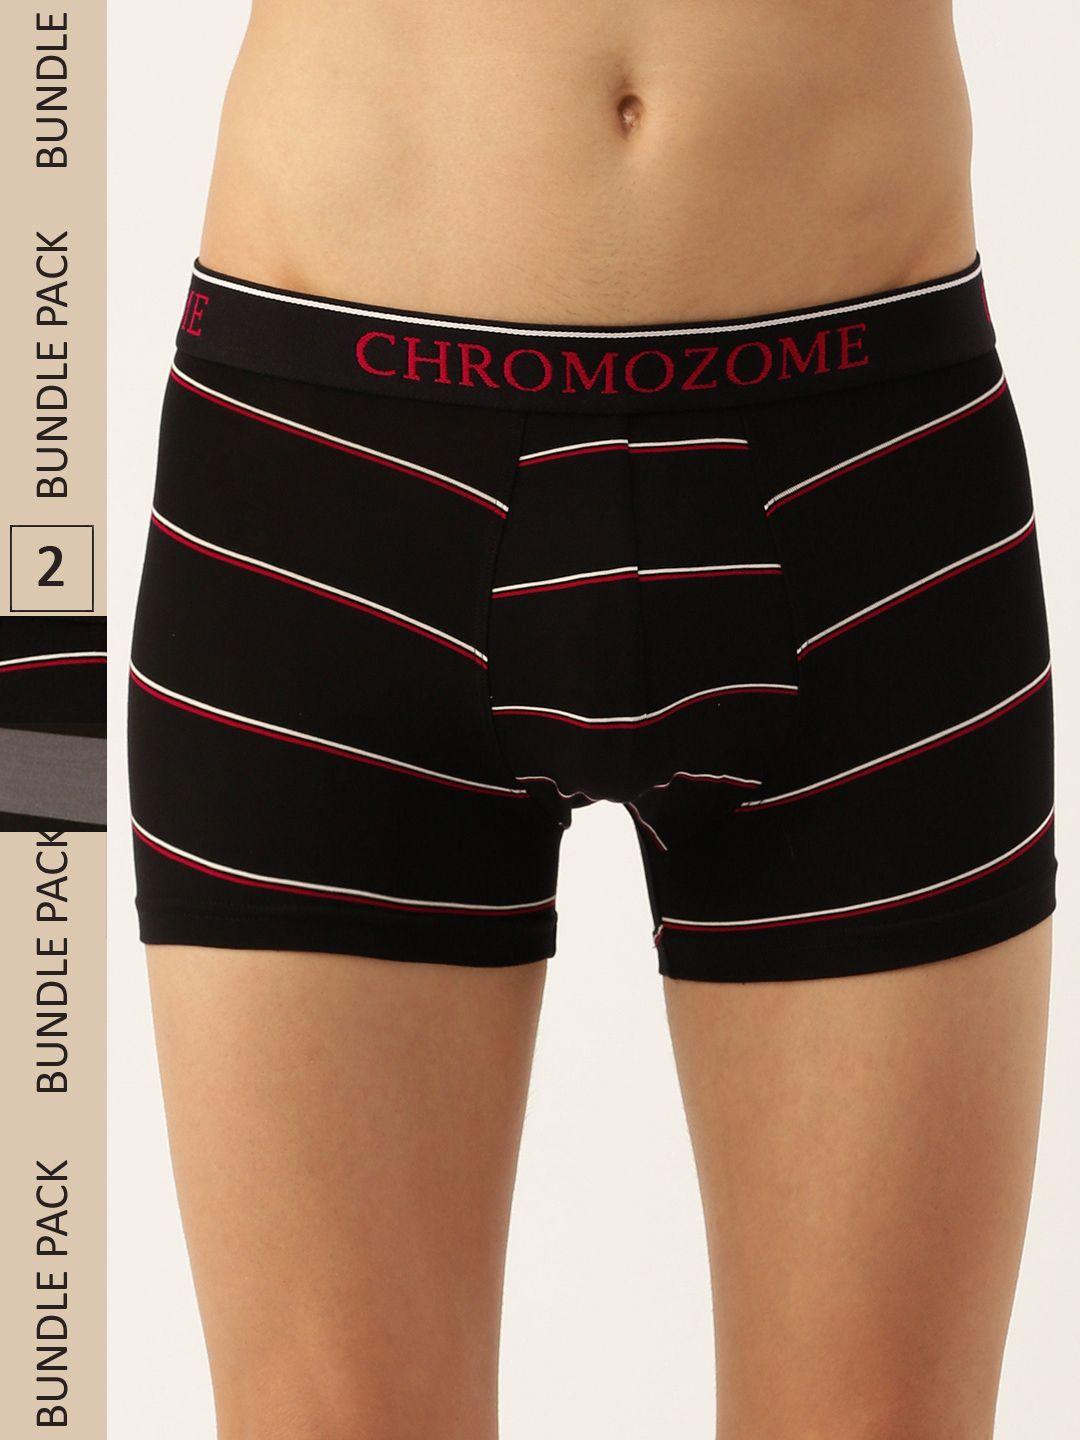 chromozome men pack of 2 ultra-premium striped trunks 8902733643344